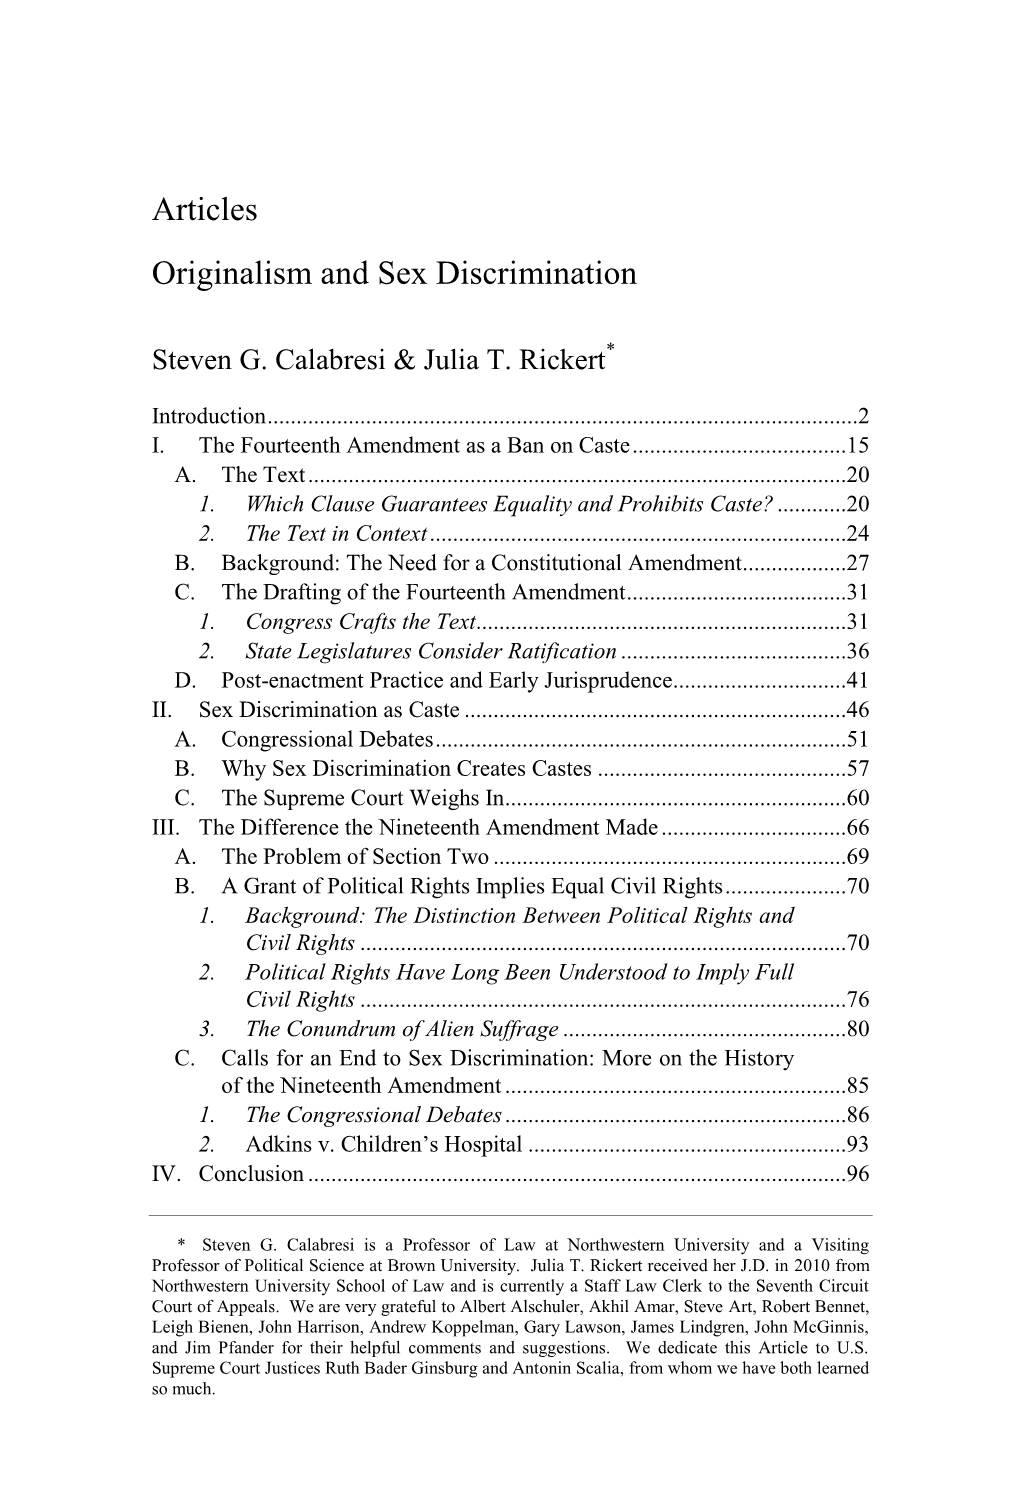 Articles Originalism and Sex Discrimination